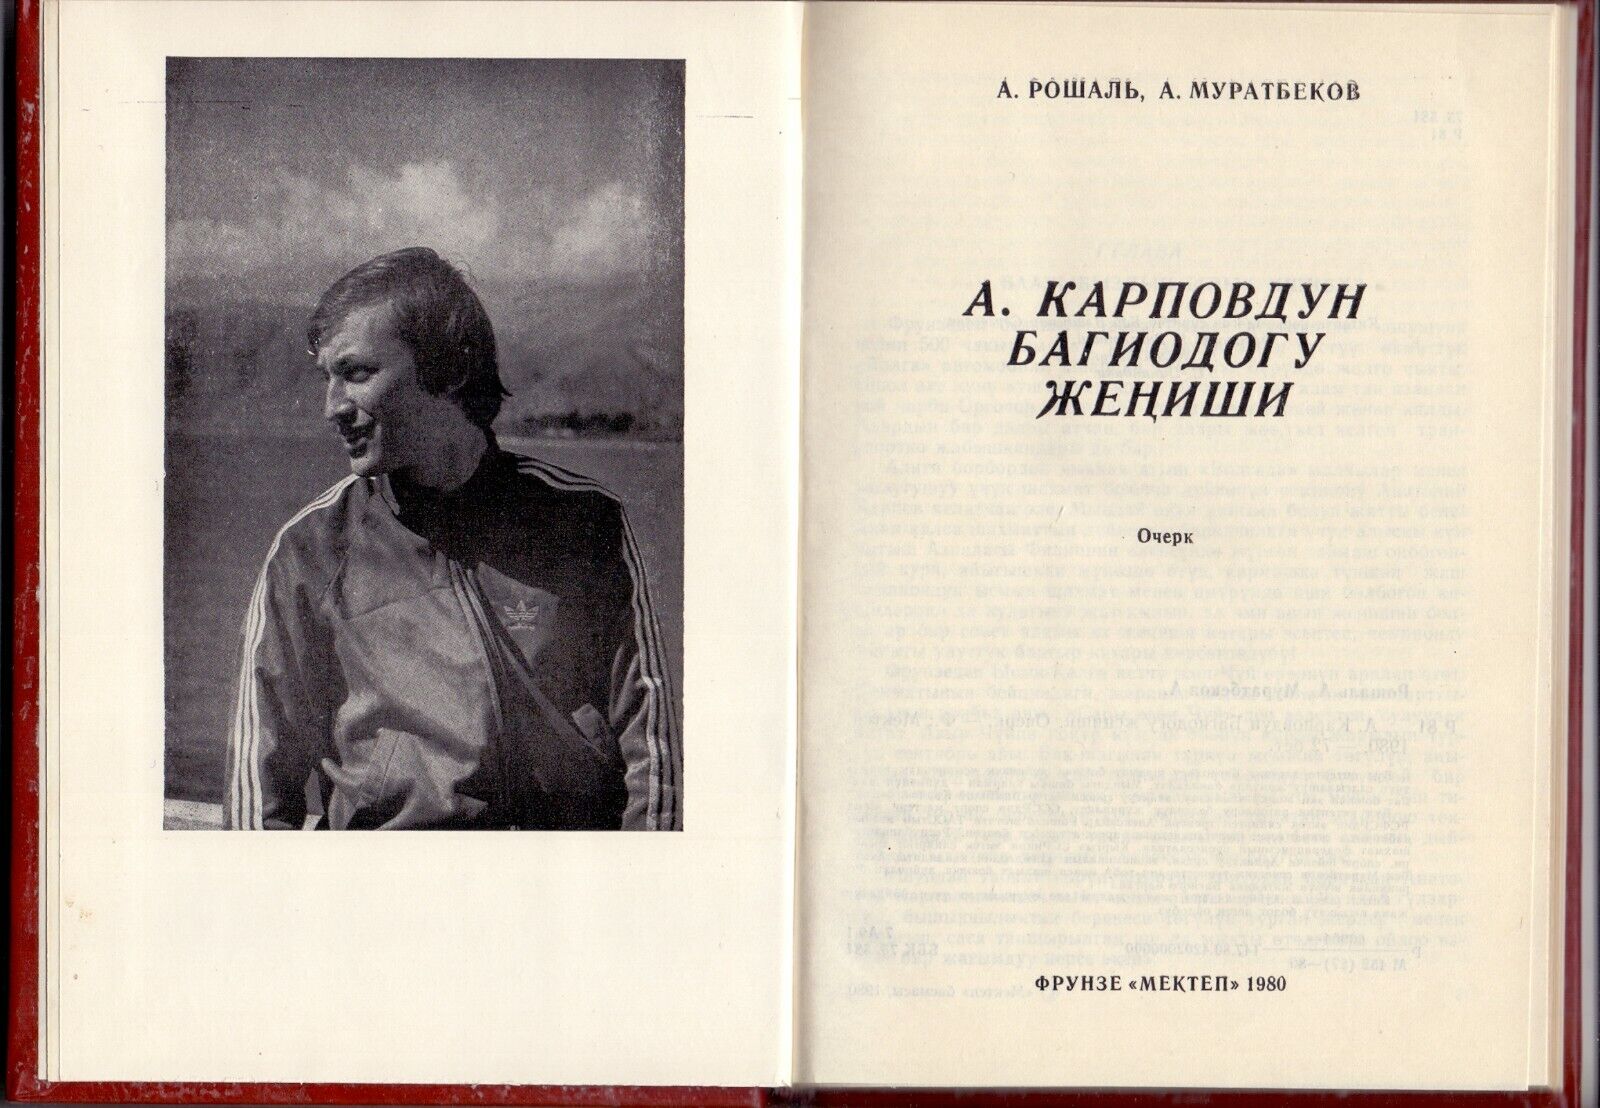 11024.Chess Book signed by Roshal and Muratbekov. 1980. Baturinsky-Karpov library